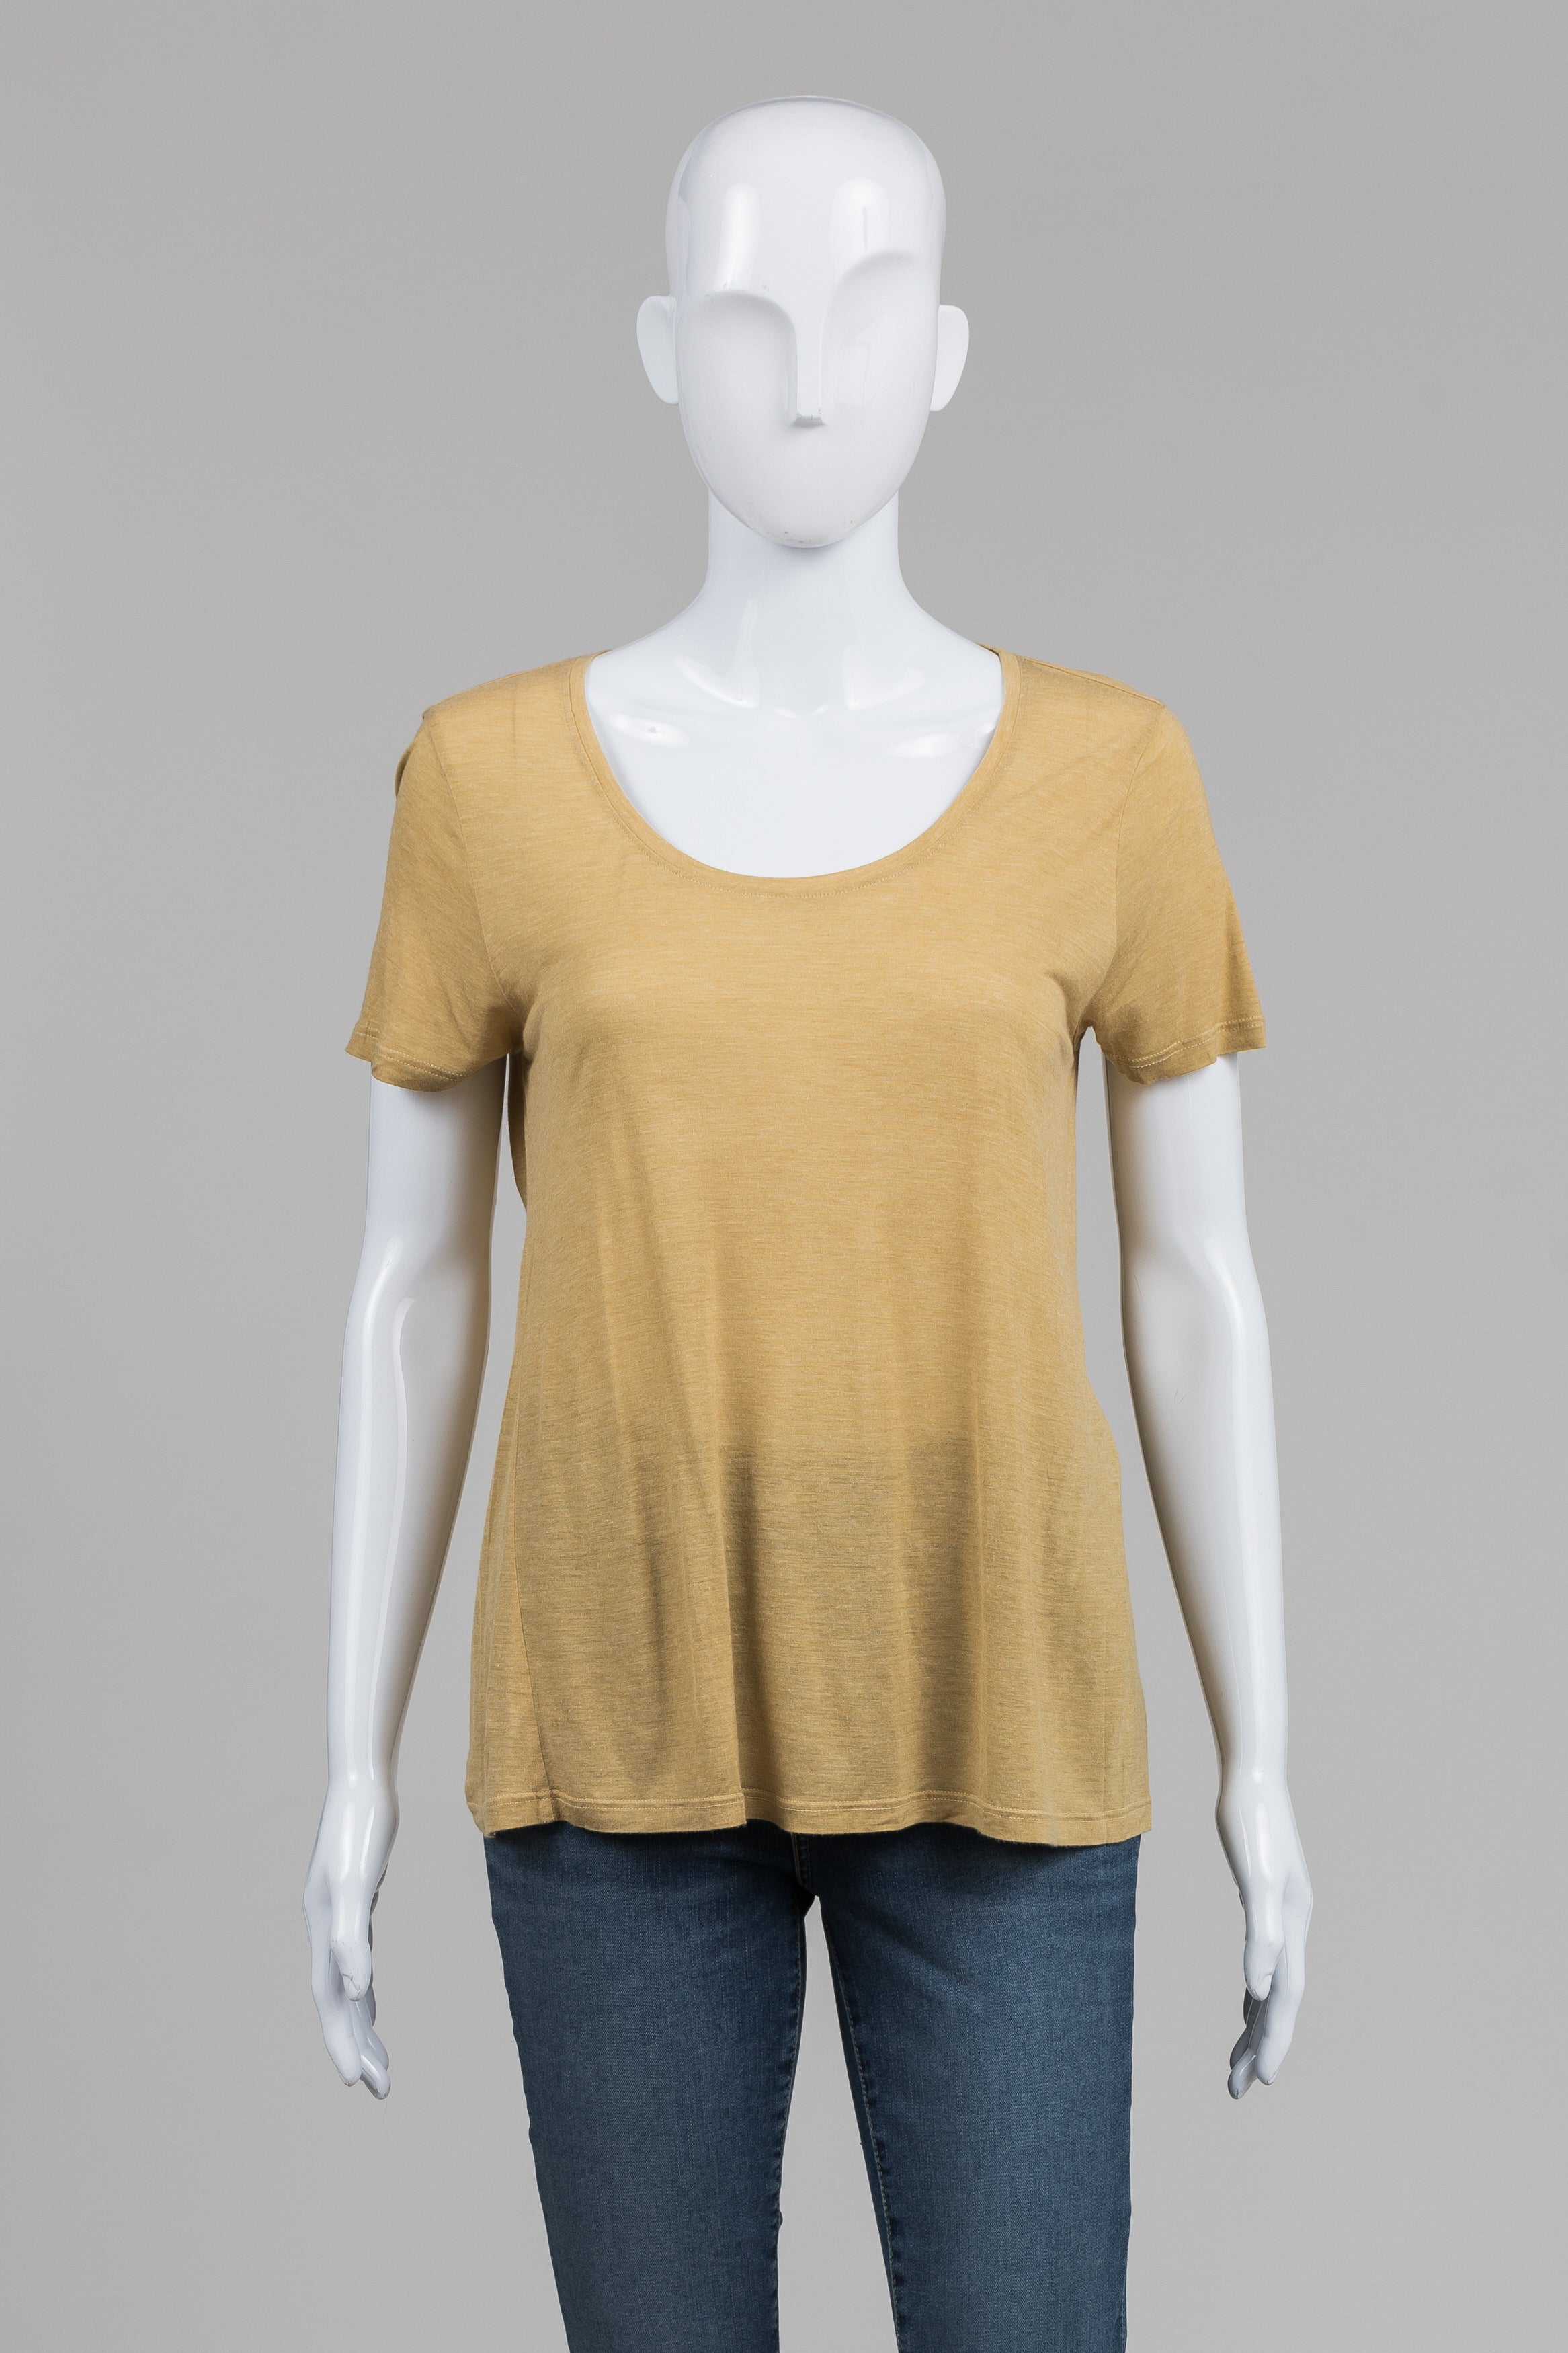 Eileen Fisher Gold Short Sleeve T-shirt (S)